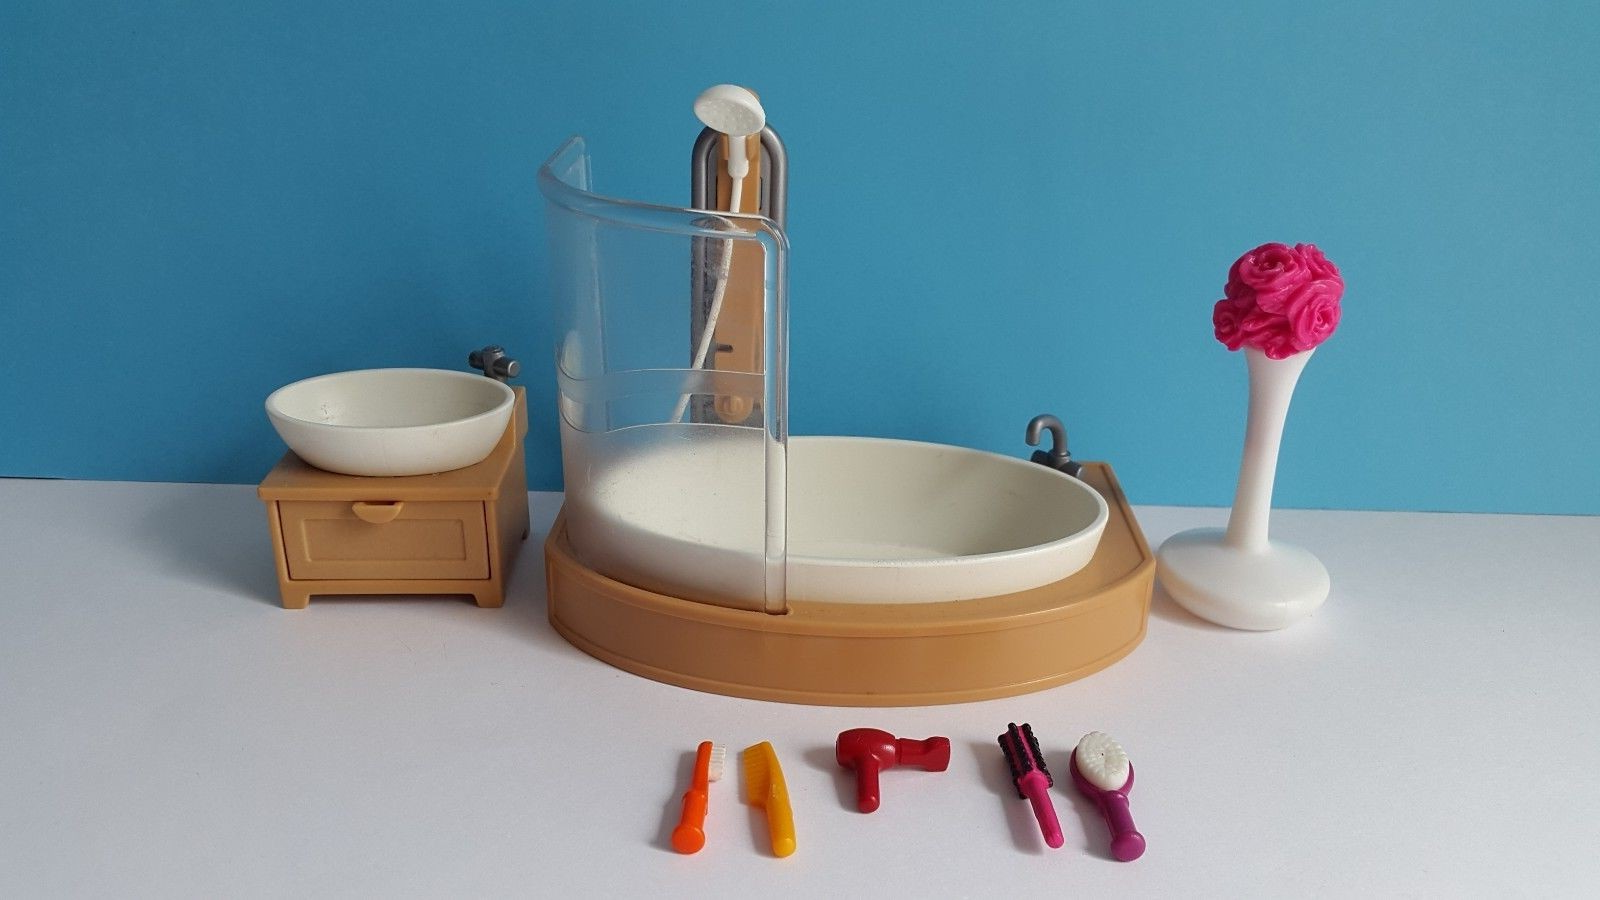 La baignoire et quelques accessoires de la salle de bain Playmobil 5330